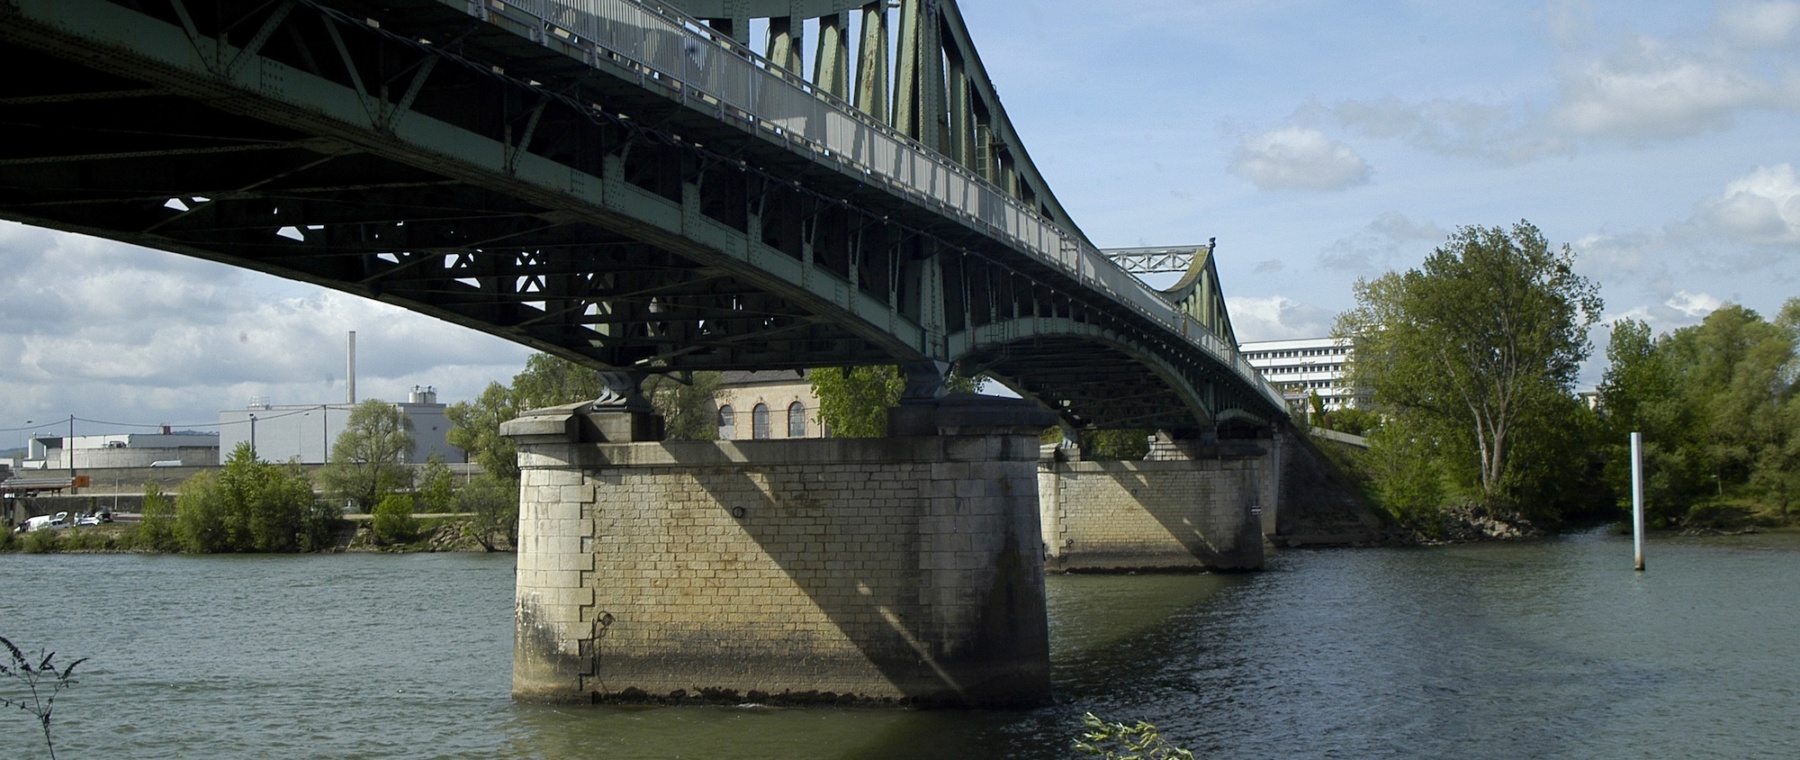 Le pont de Frans à Villefranche, photo P. Branche, 2011, Collections photographiques de la Ville de Villefranche-sur-Saone